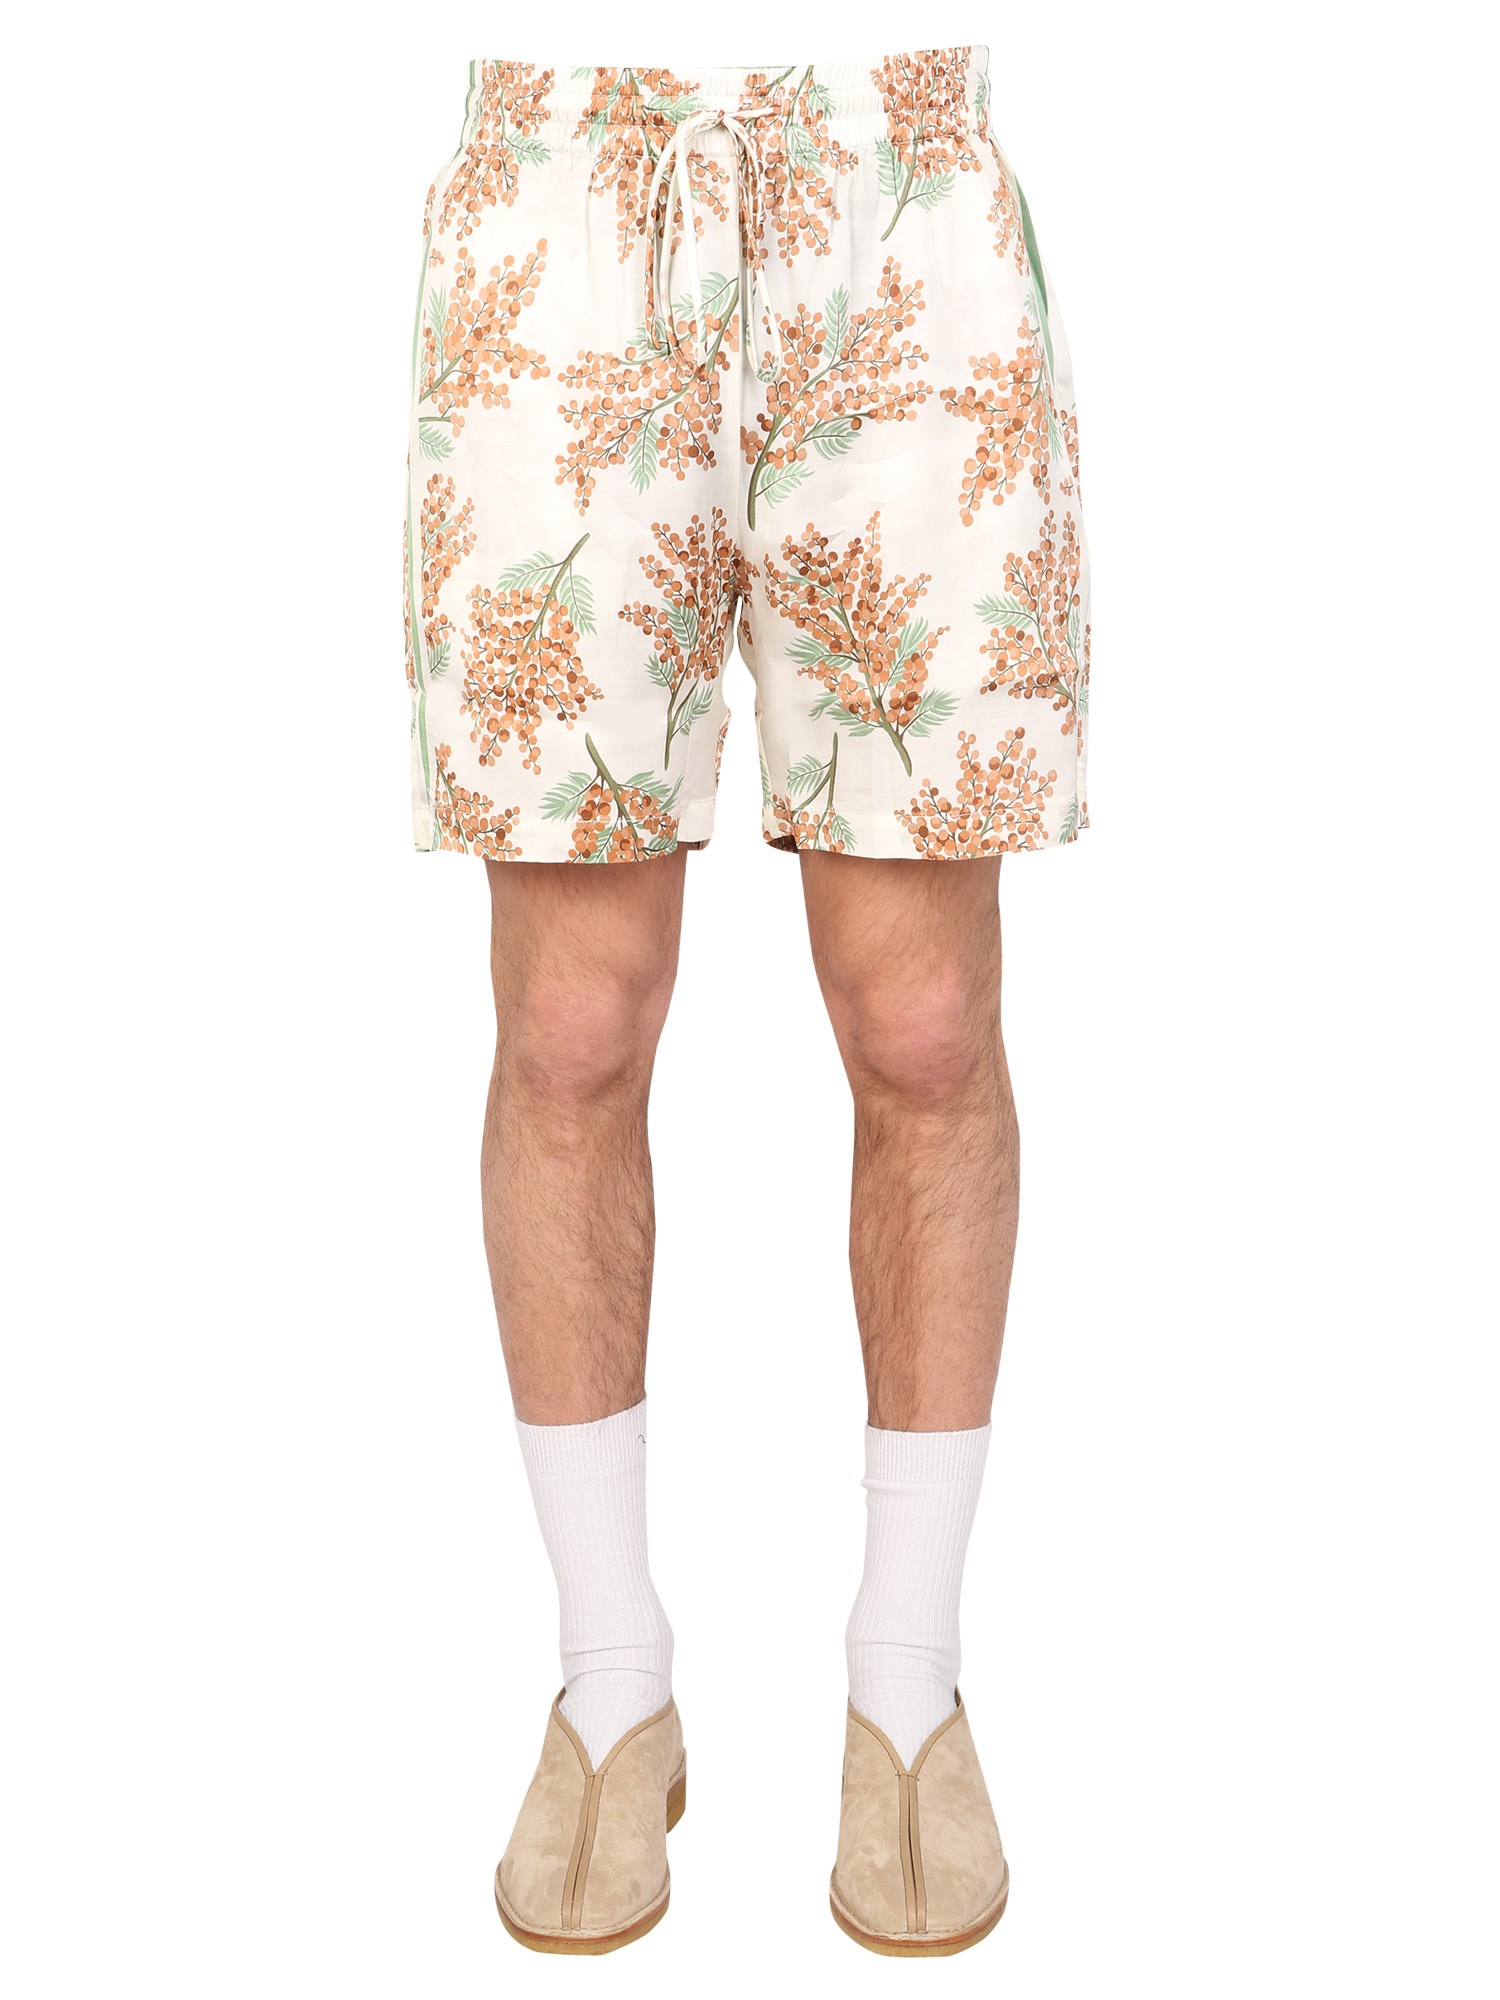 mouty bermuda floral print shorts